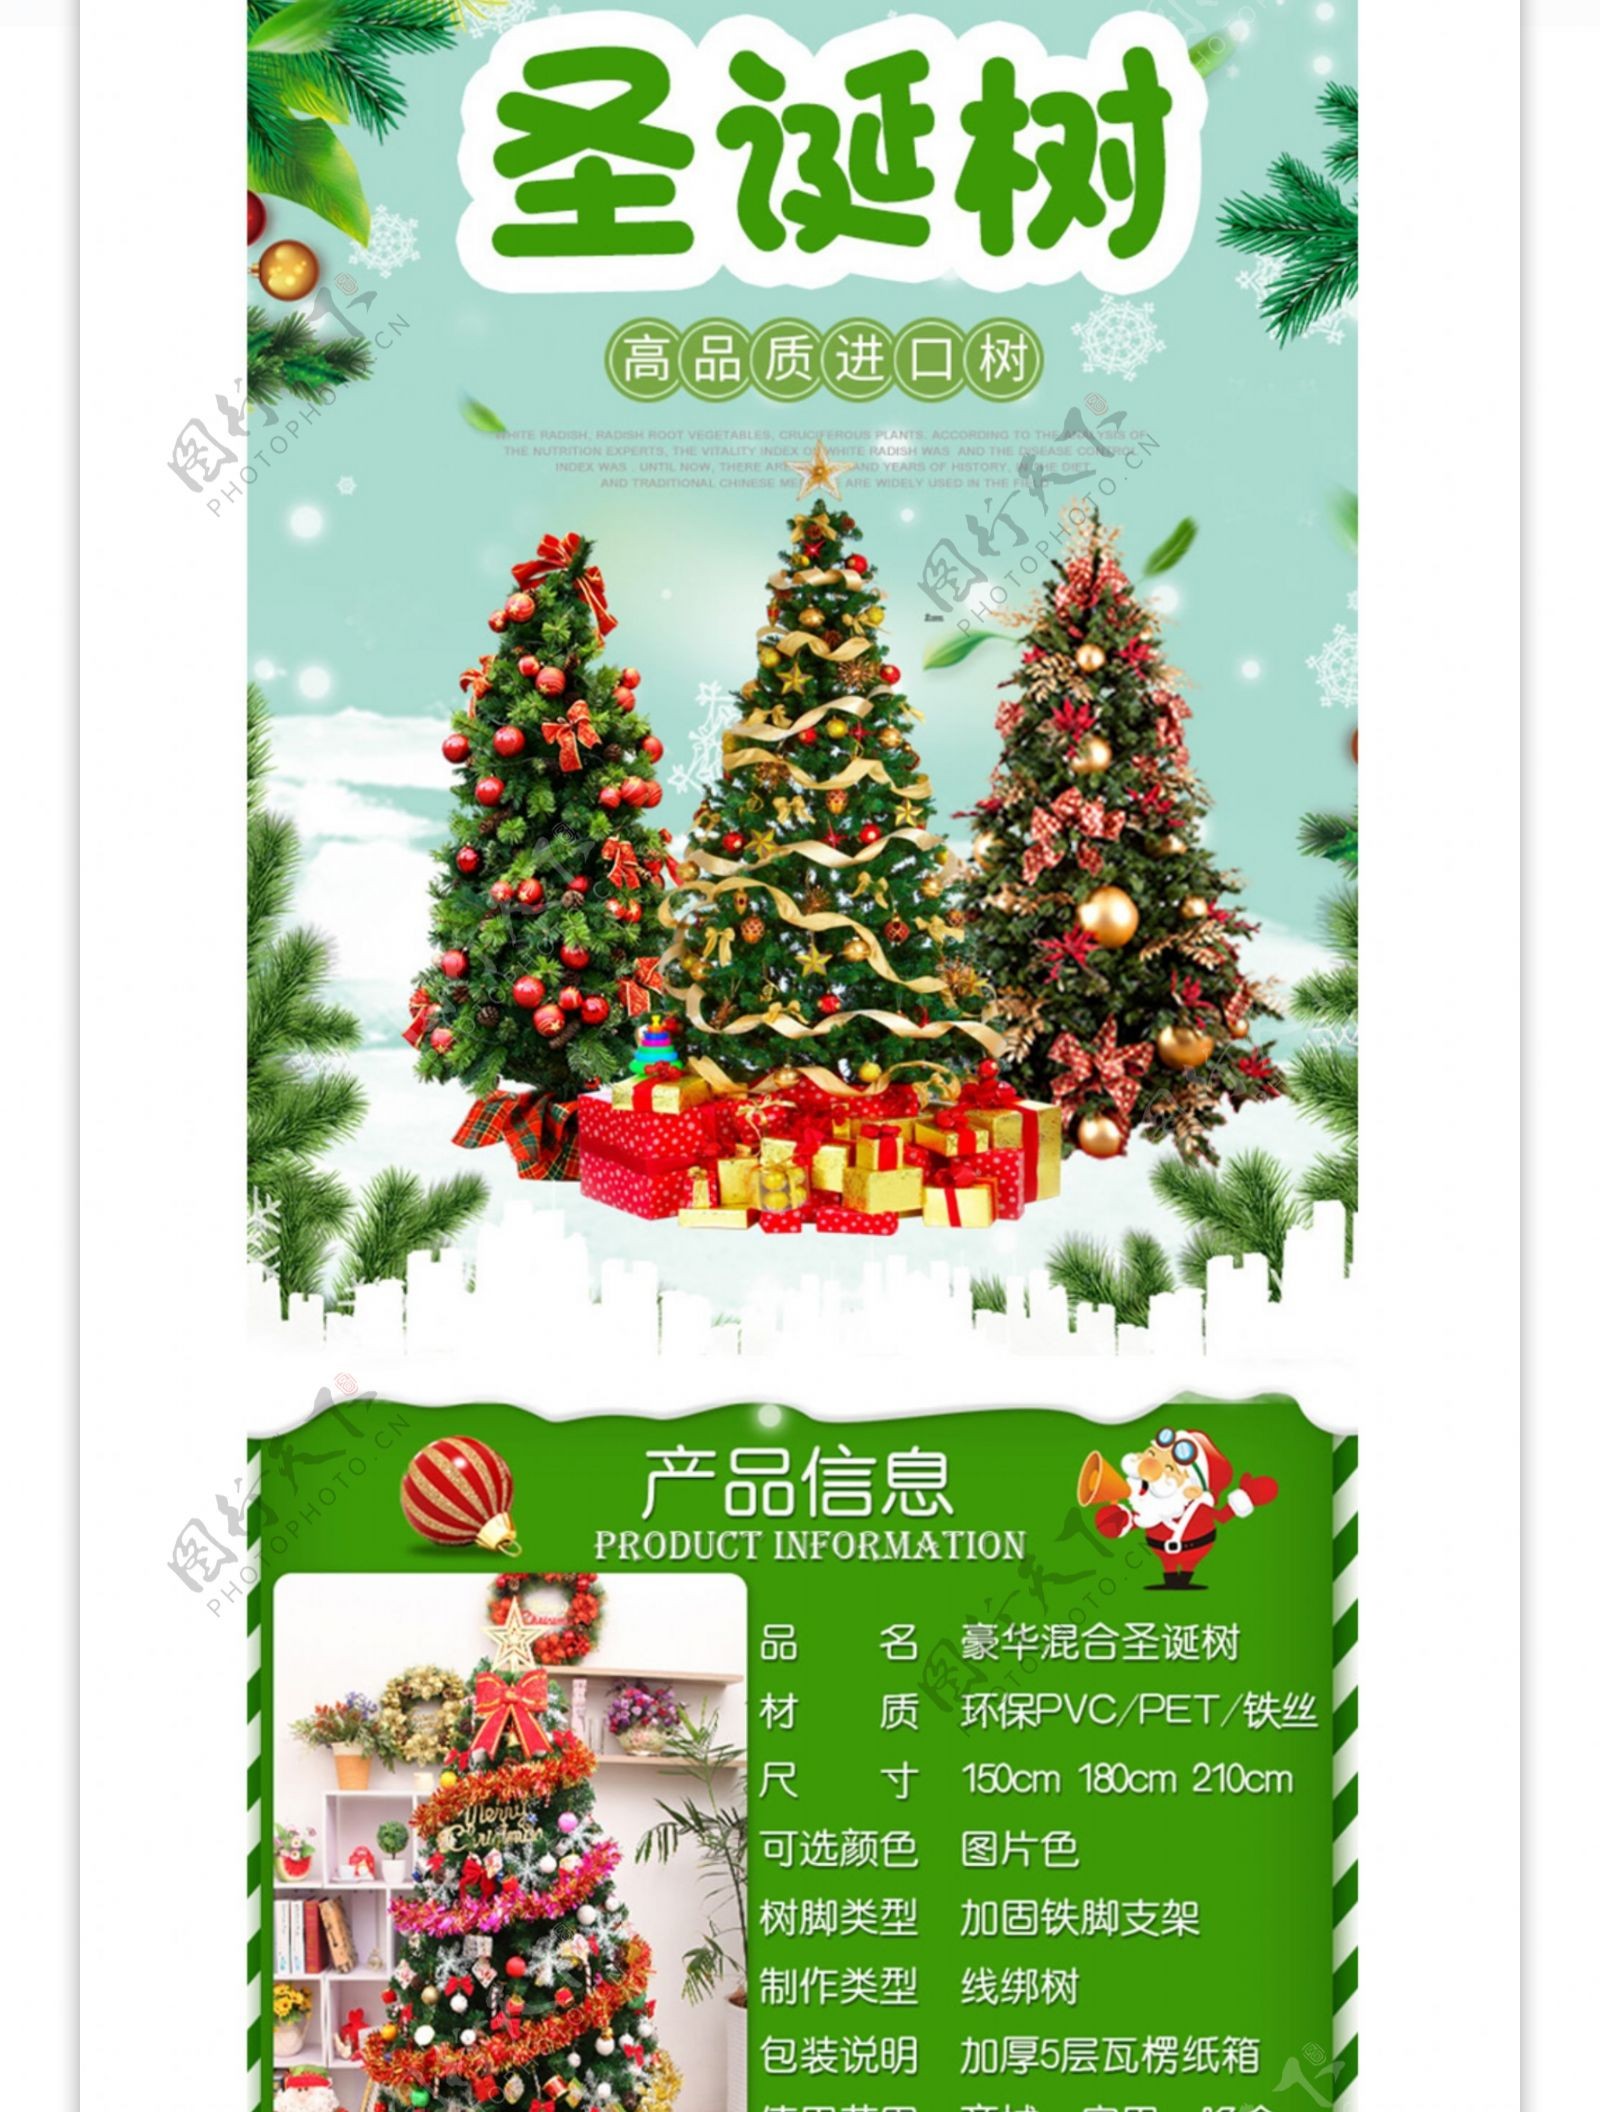 电商淘宝圣诞树装饰平安夜详情页